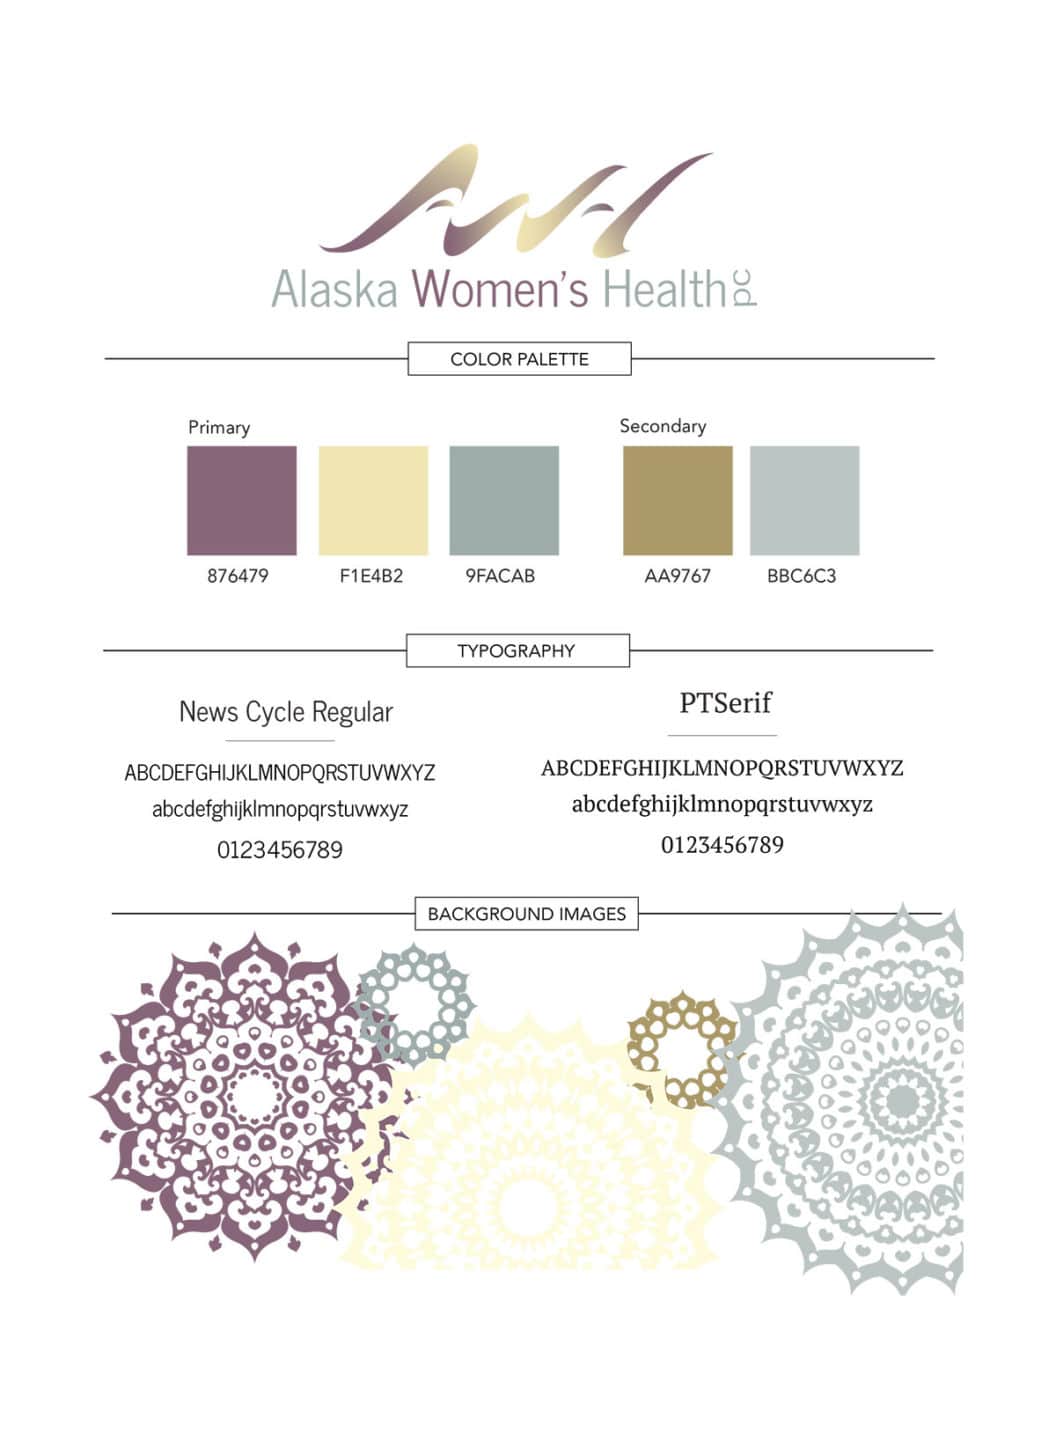 Beacon Media + Marketing's branding work for Alaska Women's Health